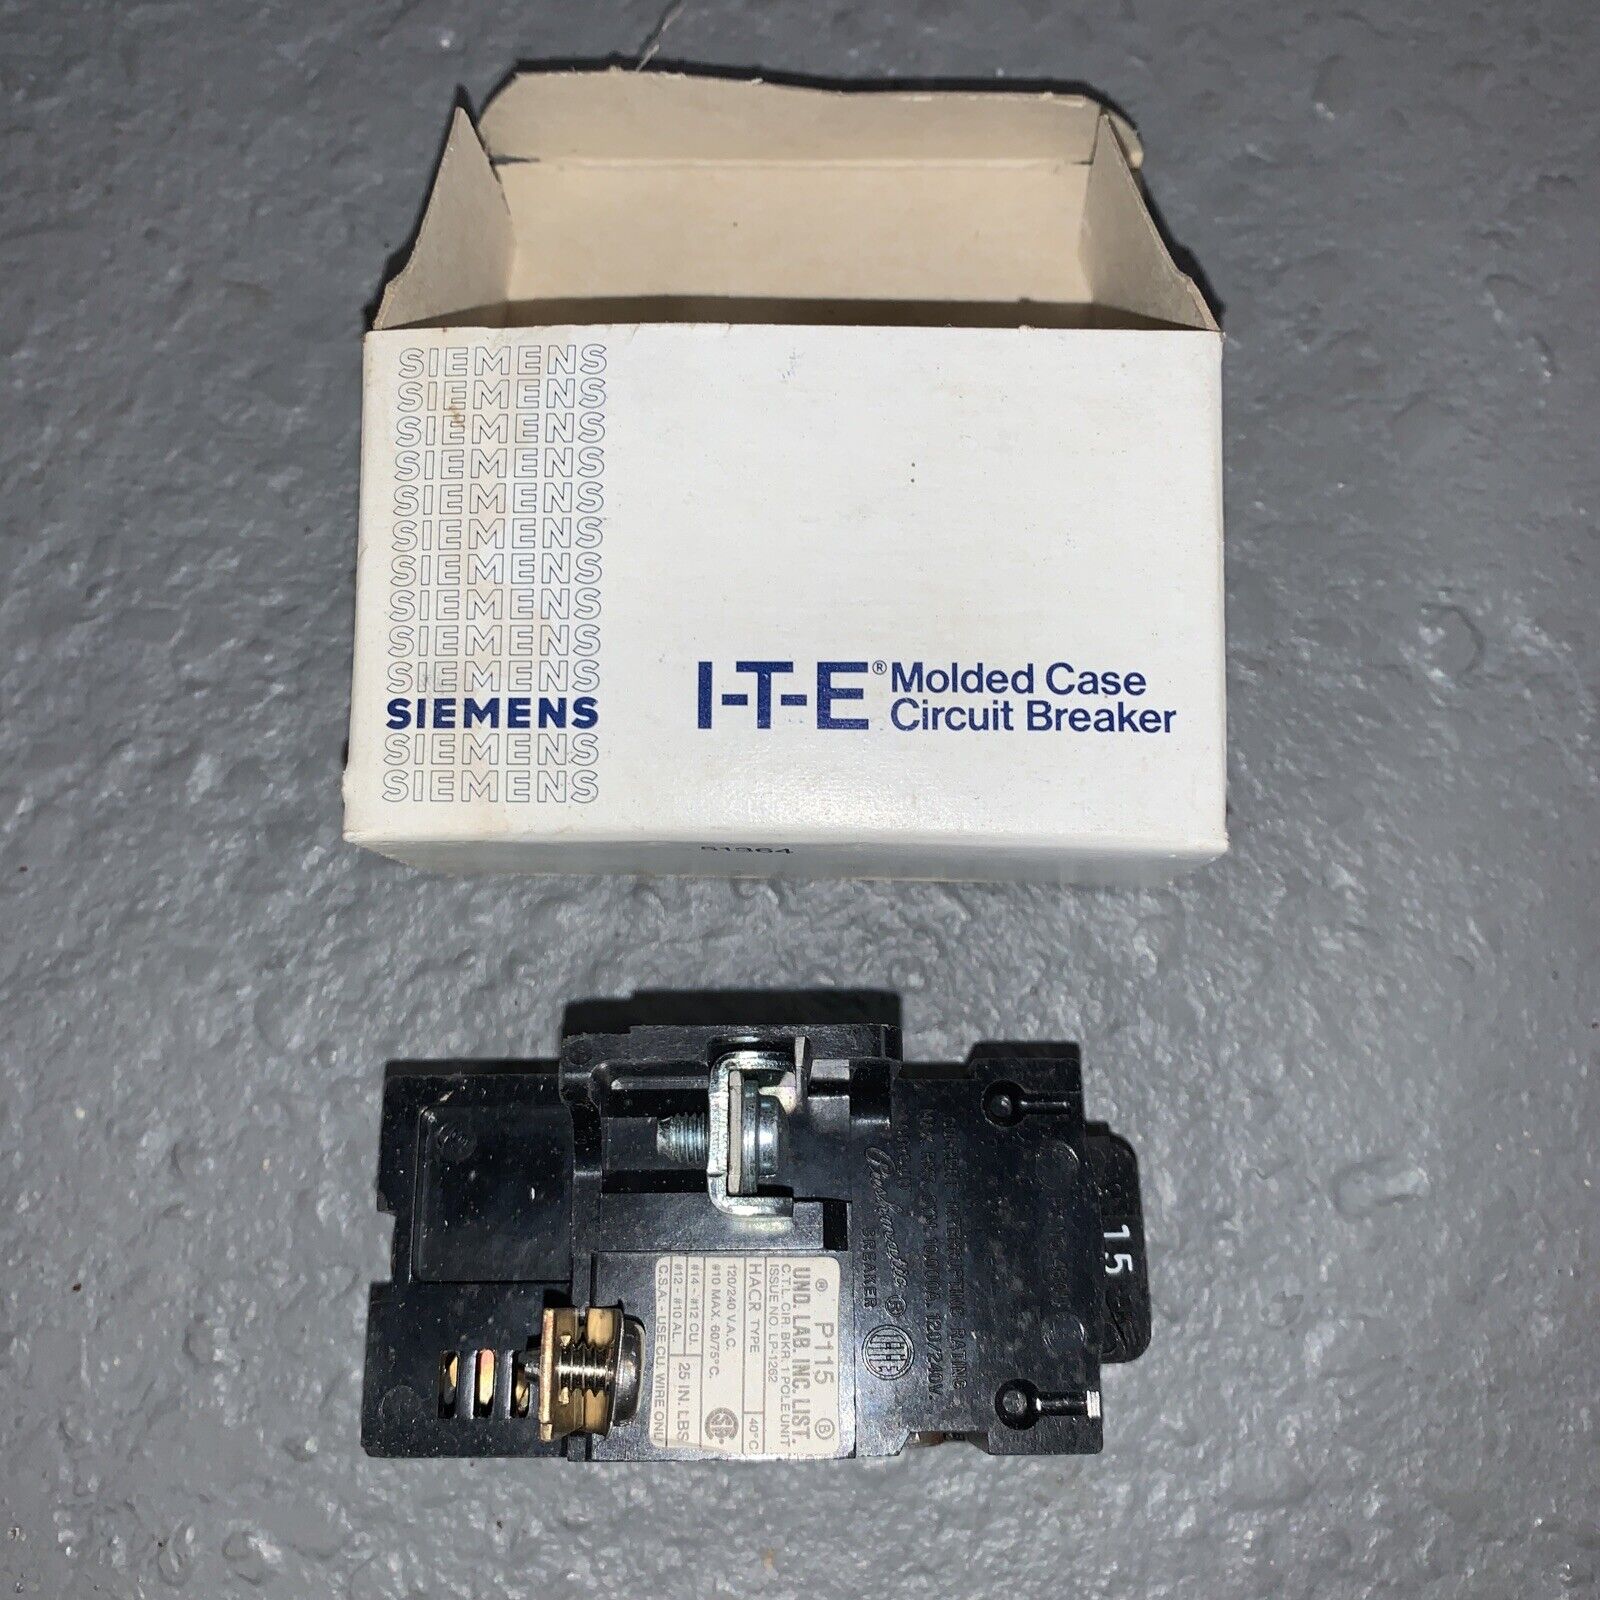 ITE Siemens P115 / 78-3643-11938 15-Amp 120/240V Molded Case Circuit Breaker